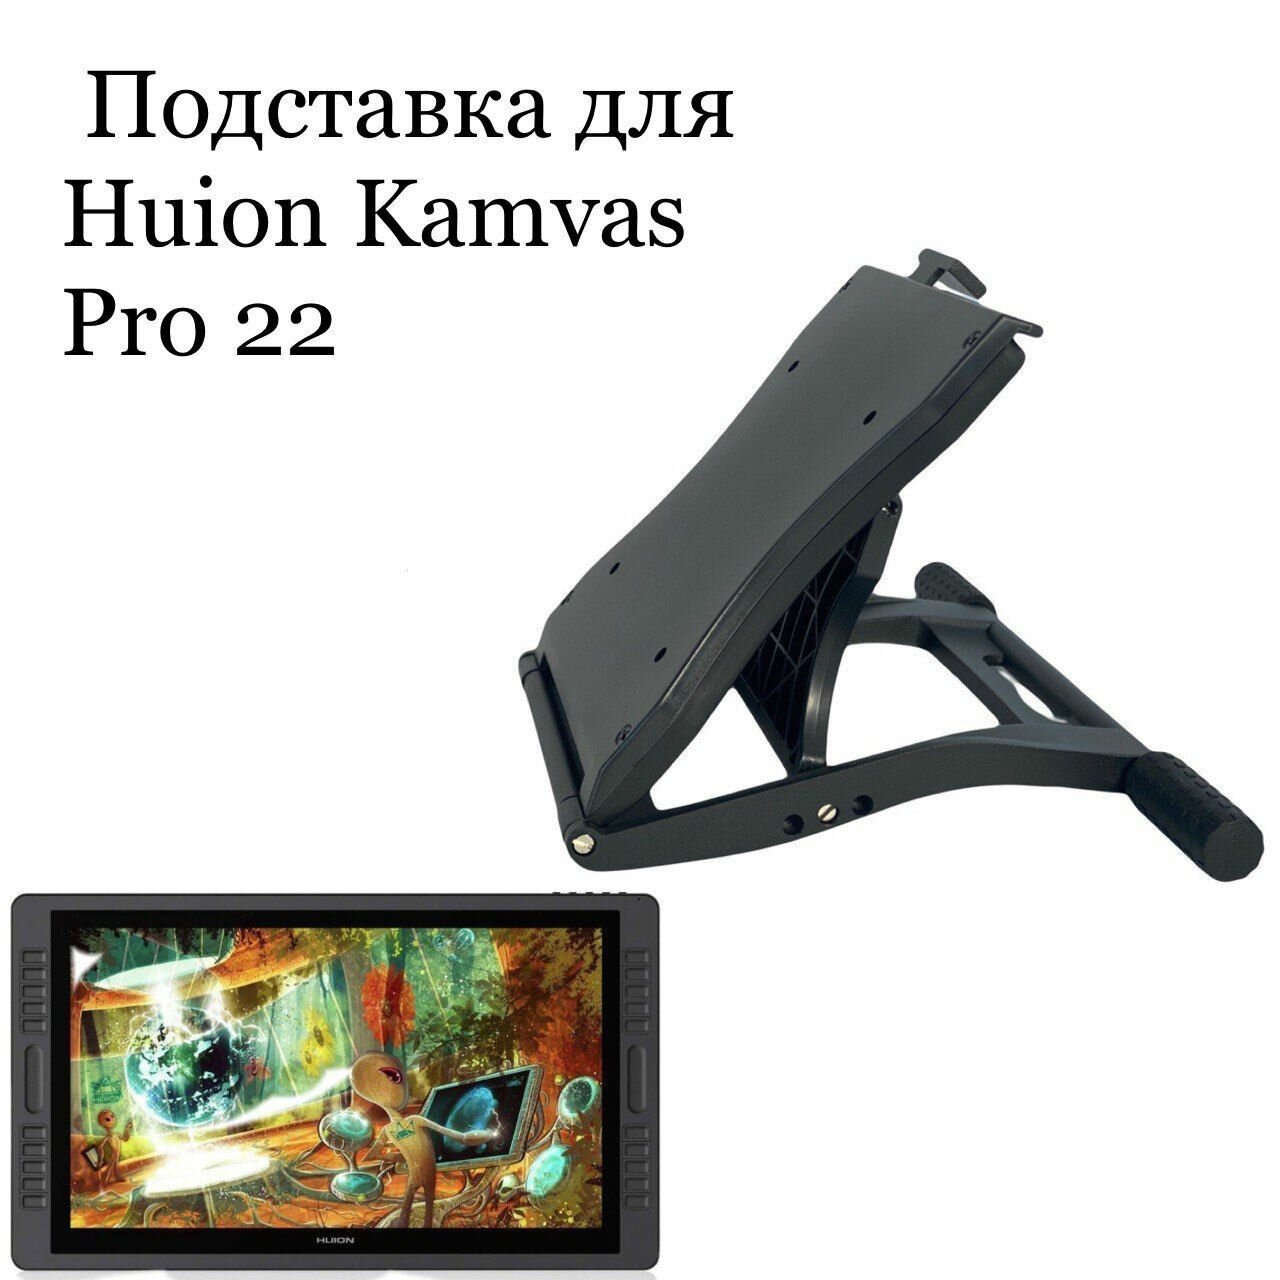 Подставка для HUION Kamvas Pro 22